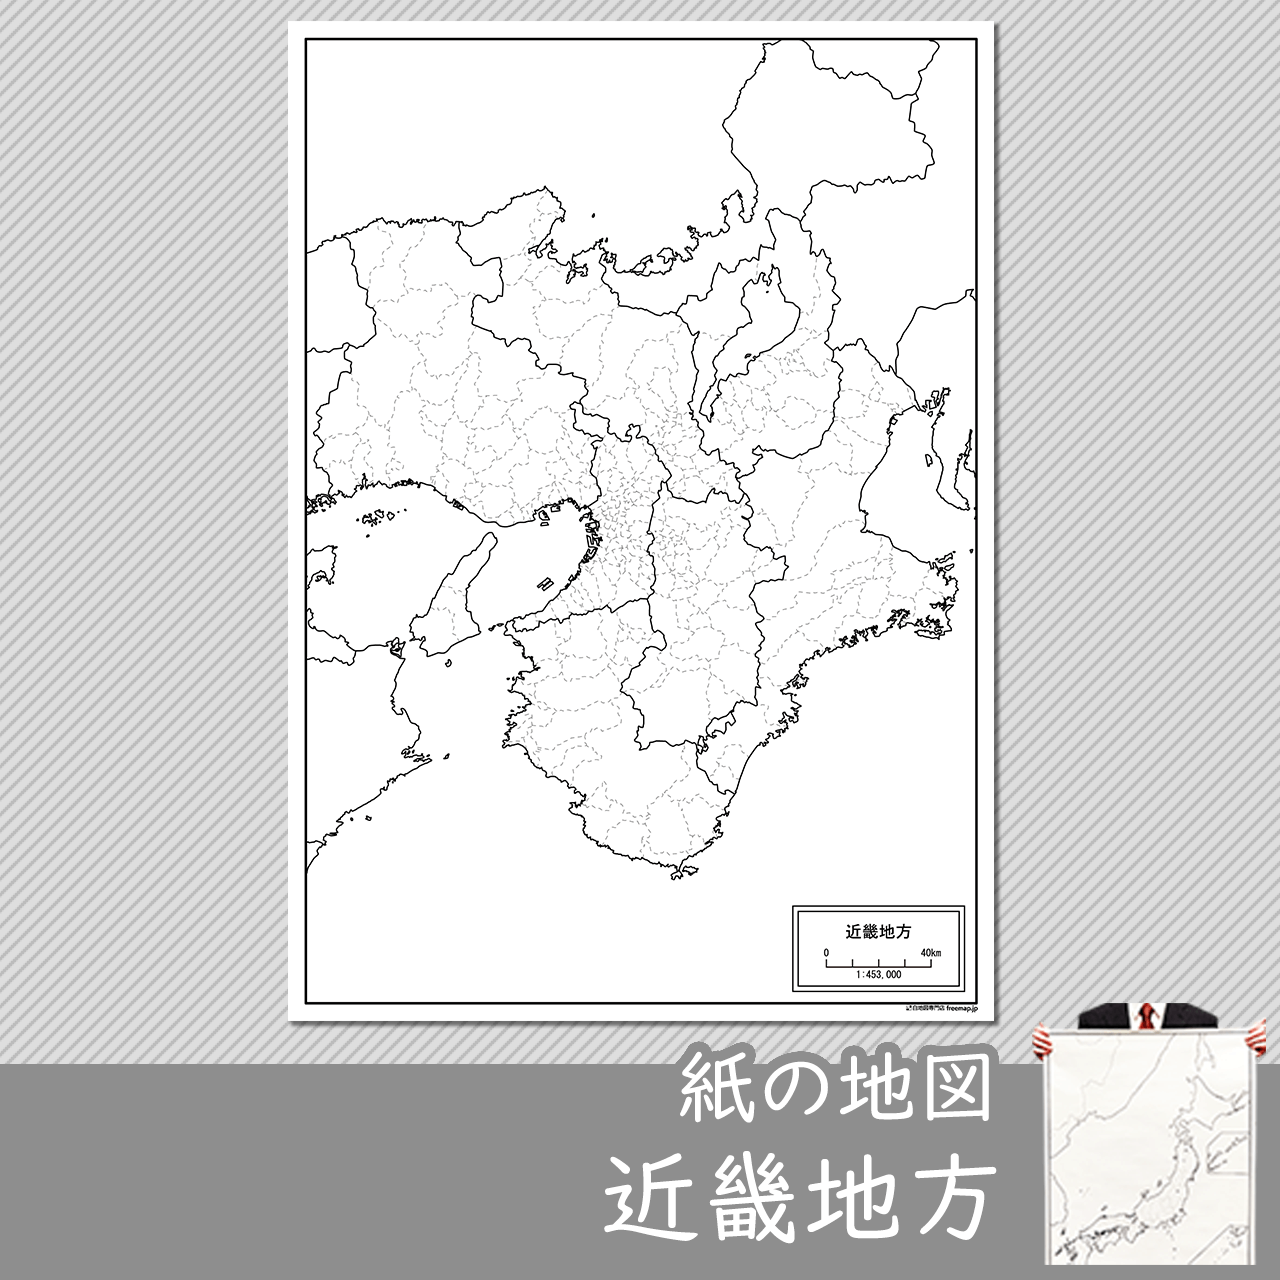 近畿地方の紙の白地図のサムネイル